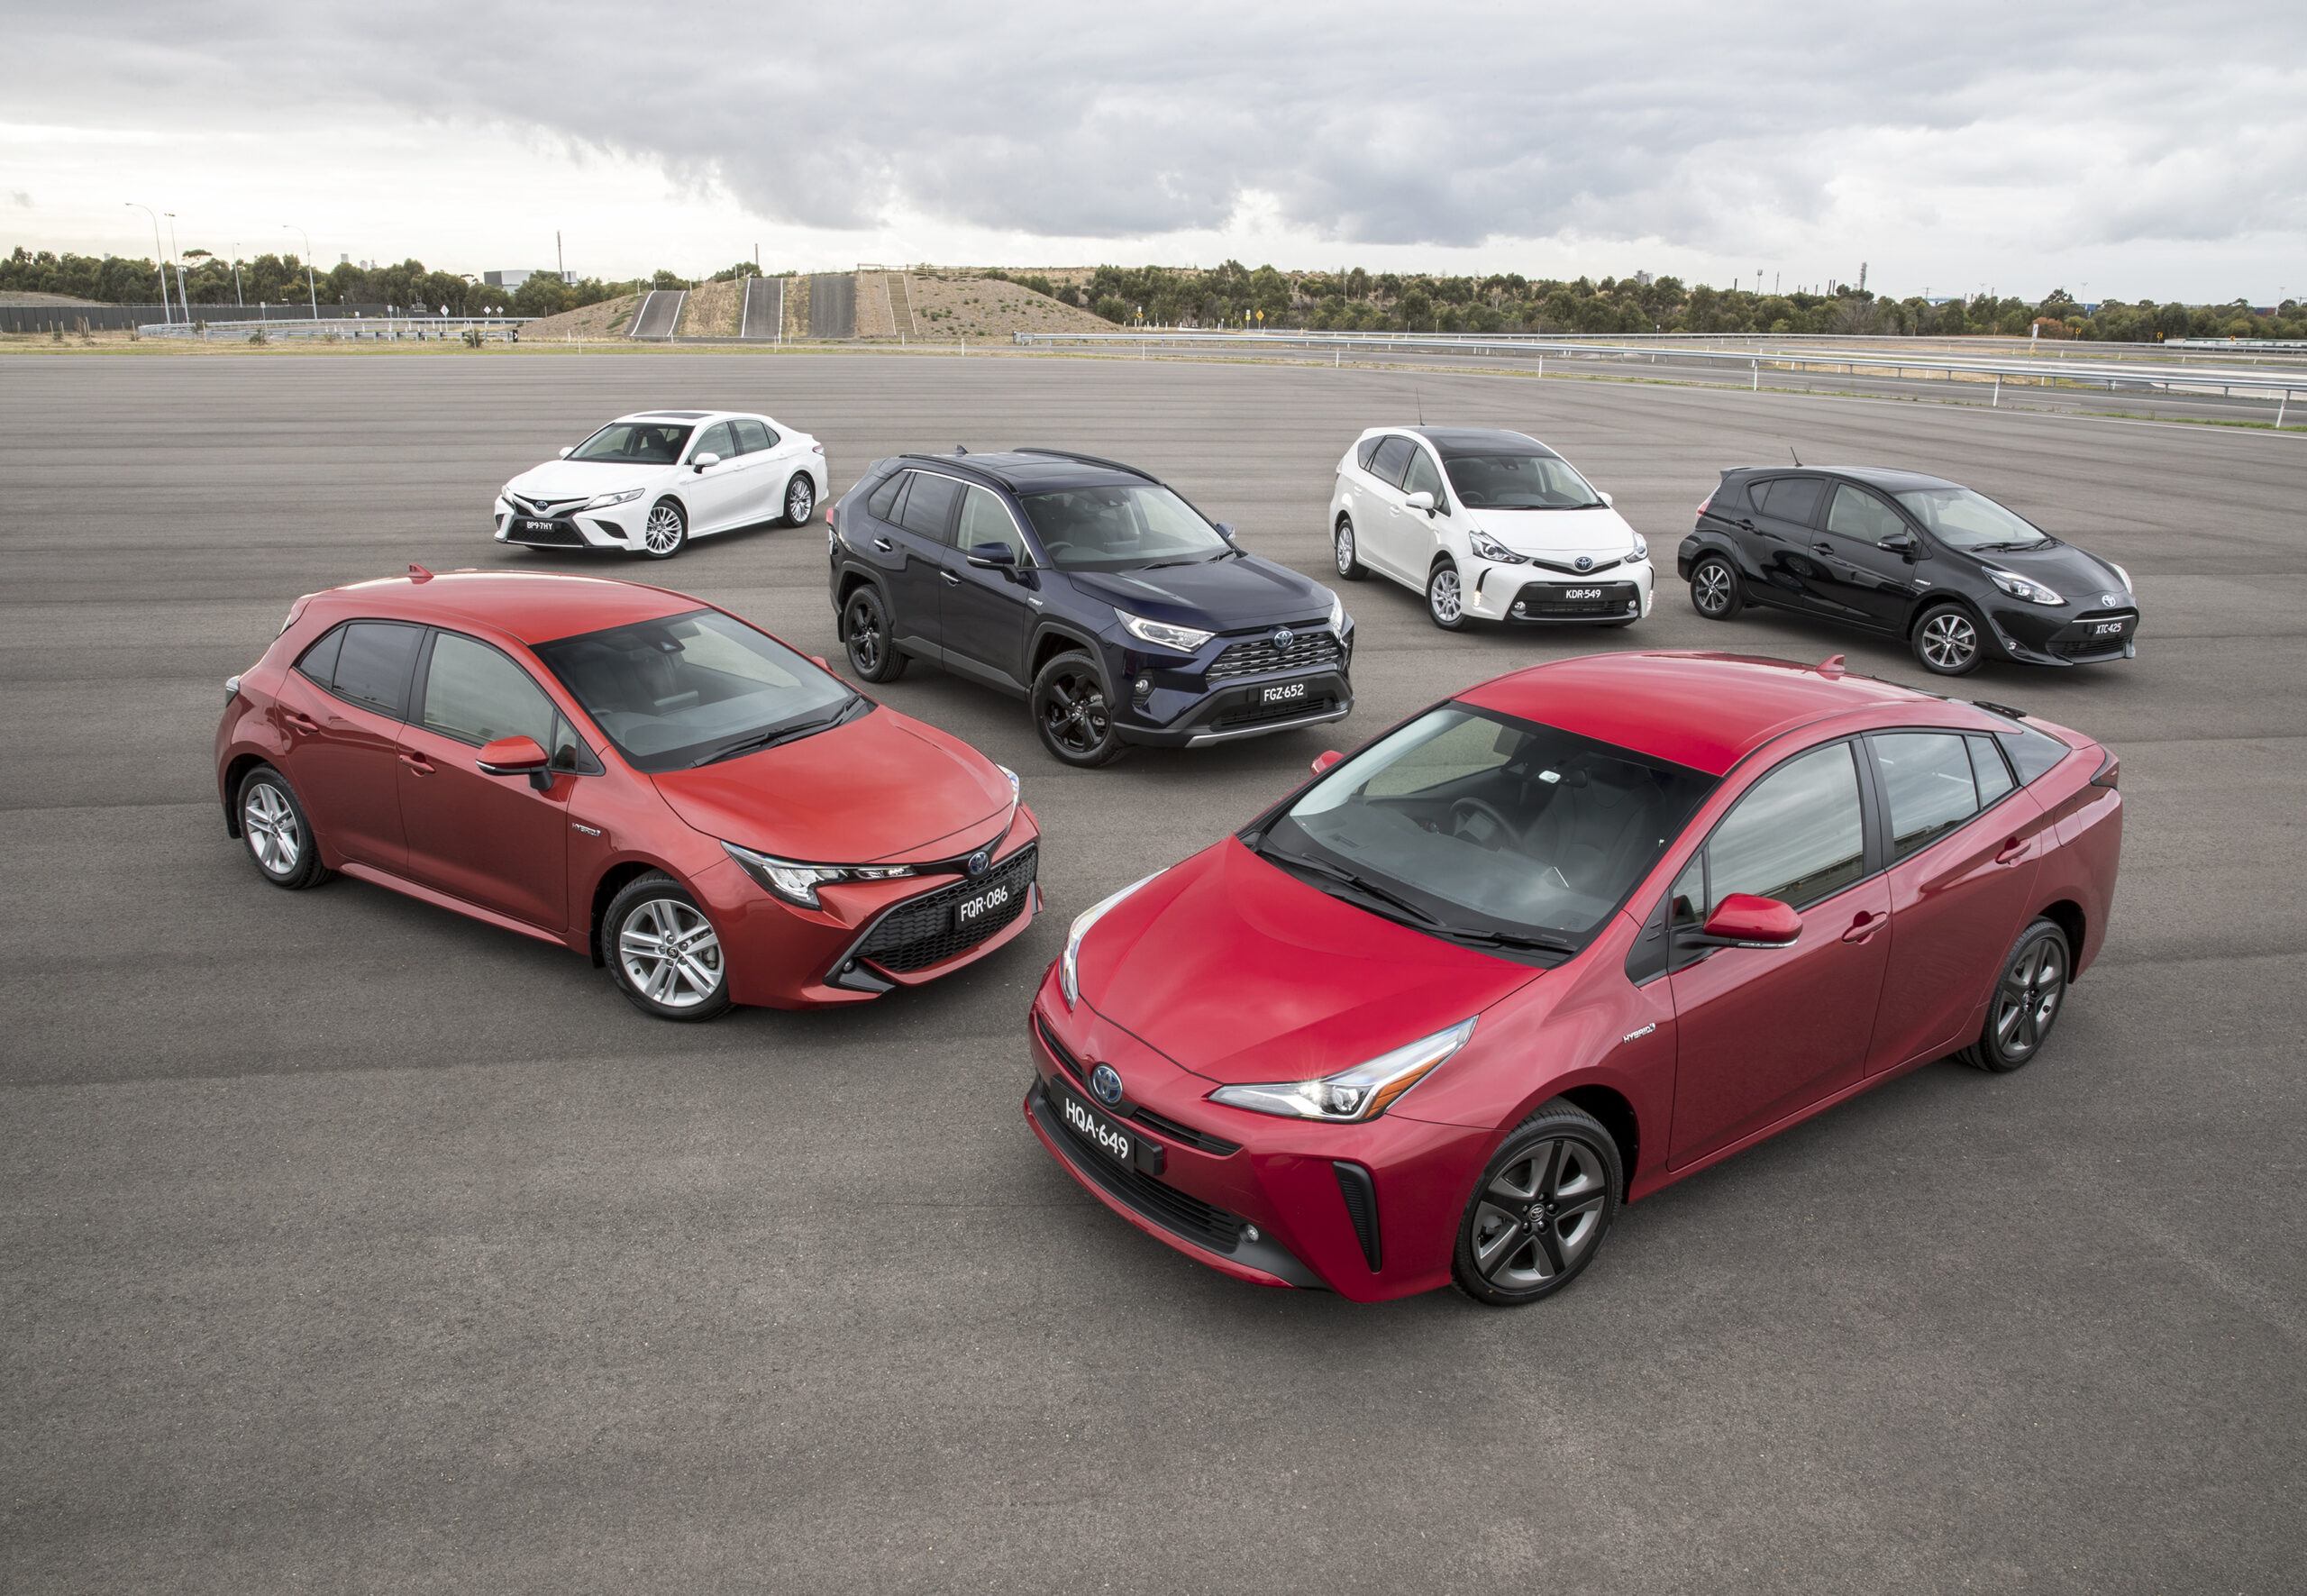 Toyota hybrids: RAV4, Prius, Camry, Corolla, Prius C and Prius V